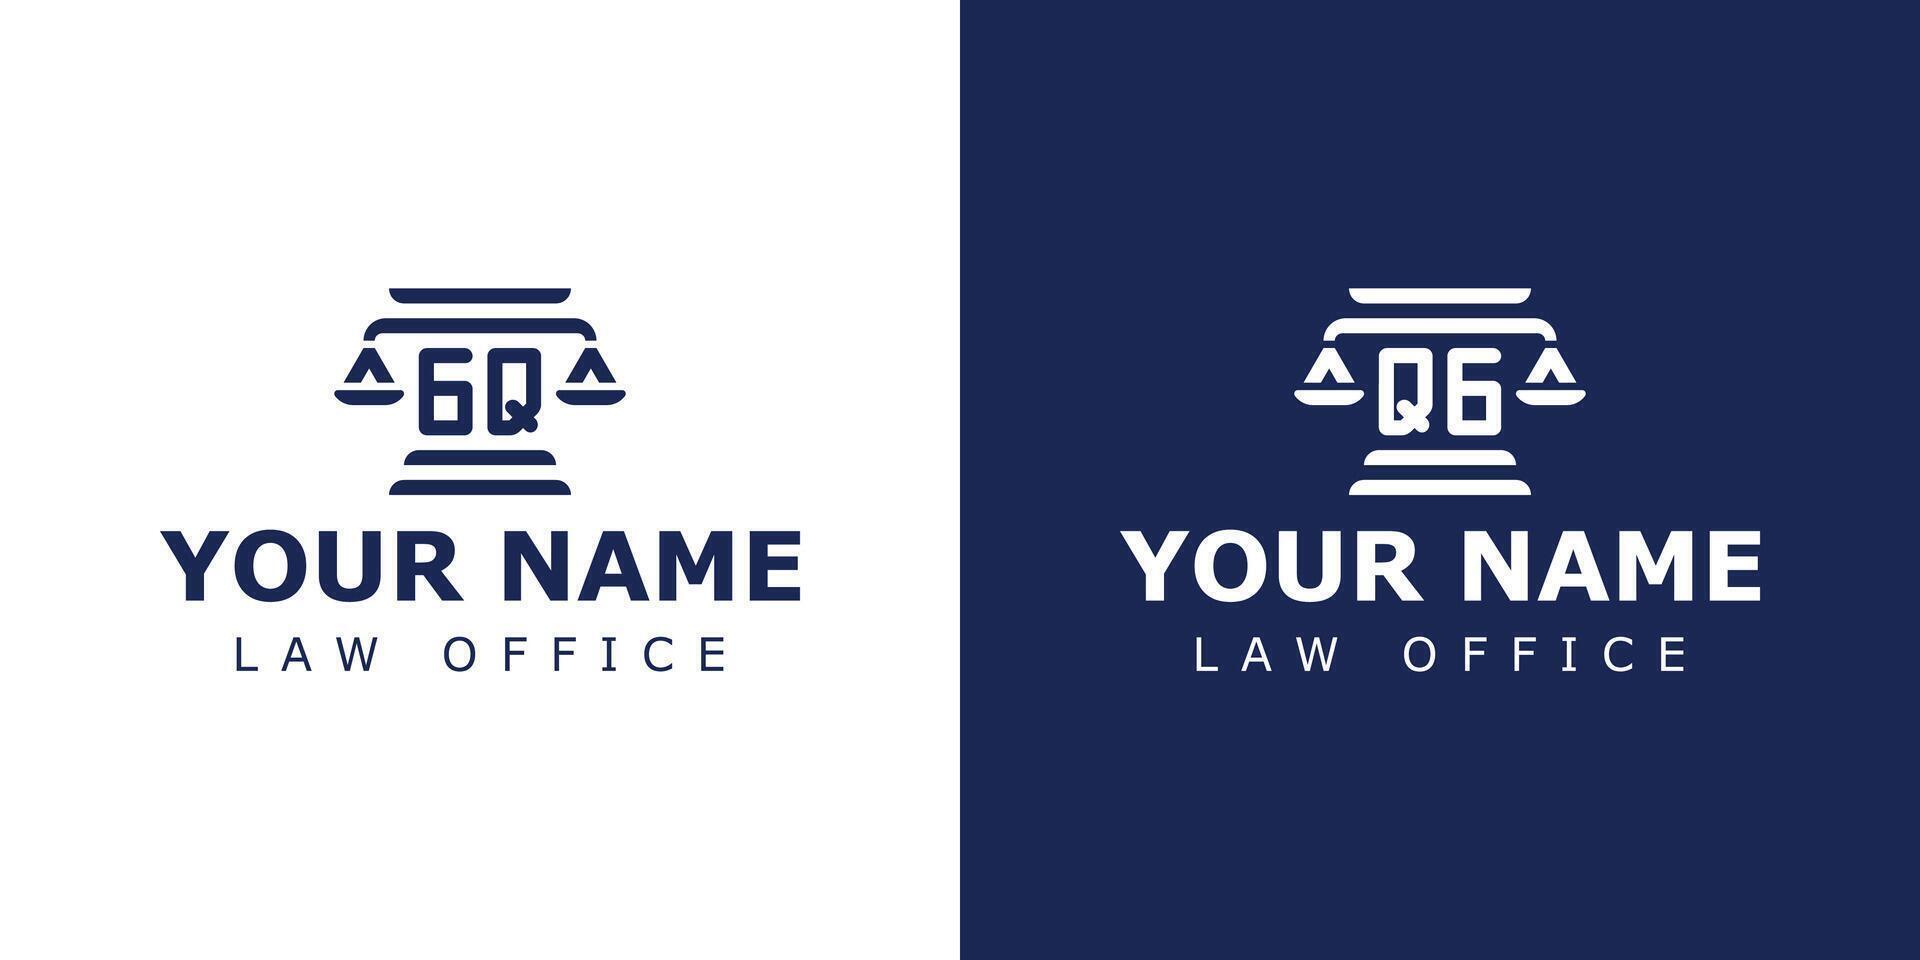 letras gq y qg legal logo, adecuado para abogado, legal, o justicia con gq o qg iniciales vector